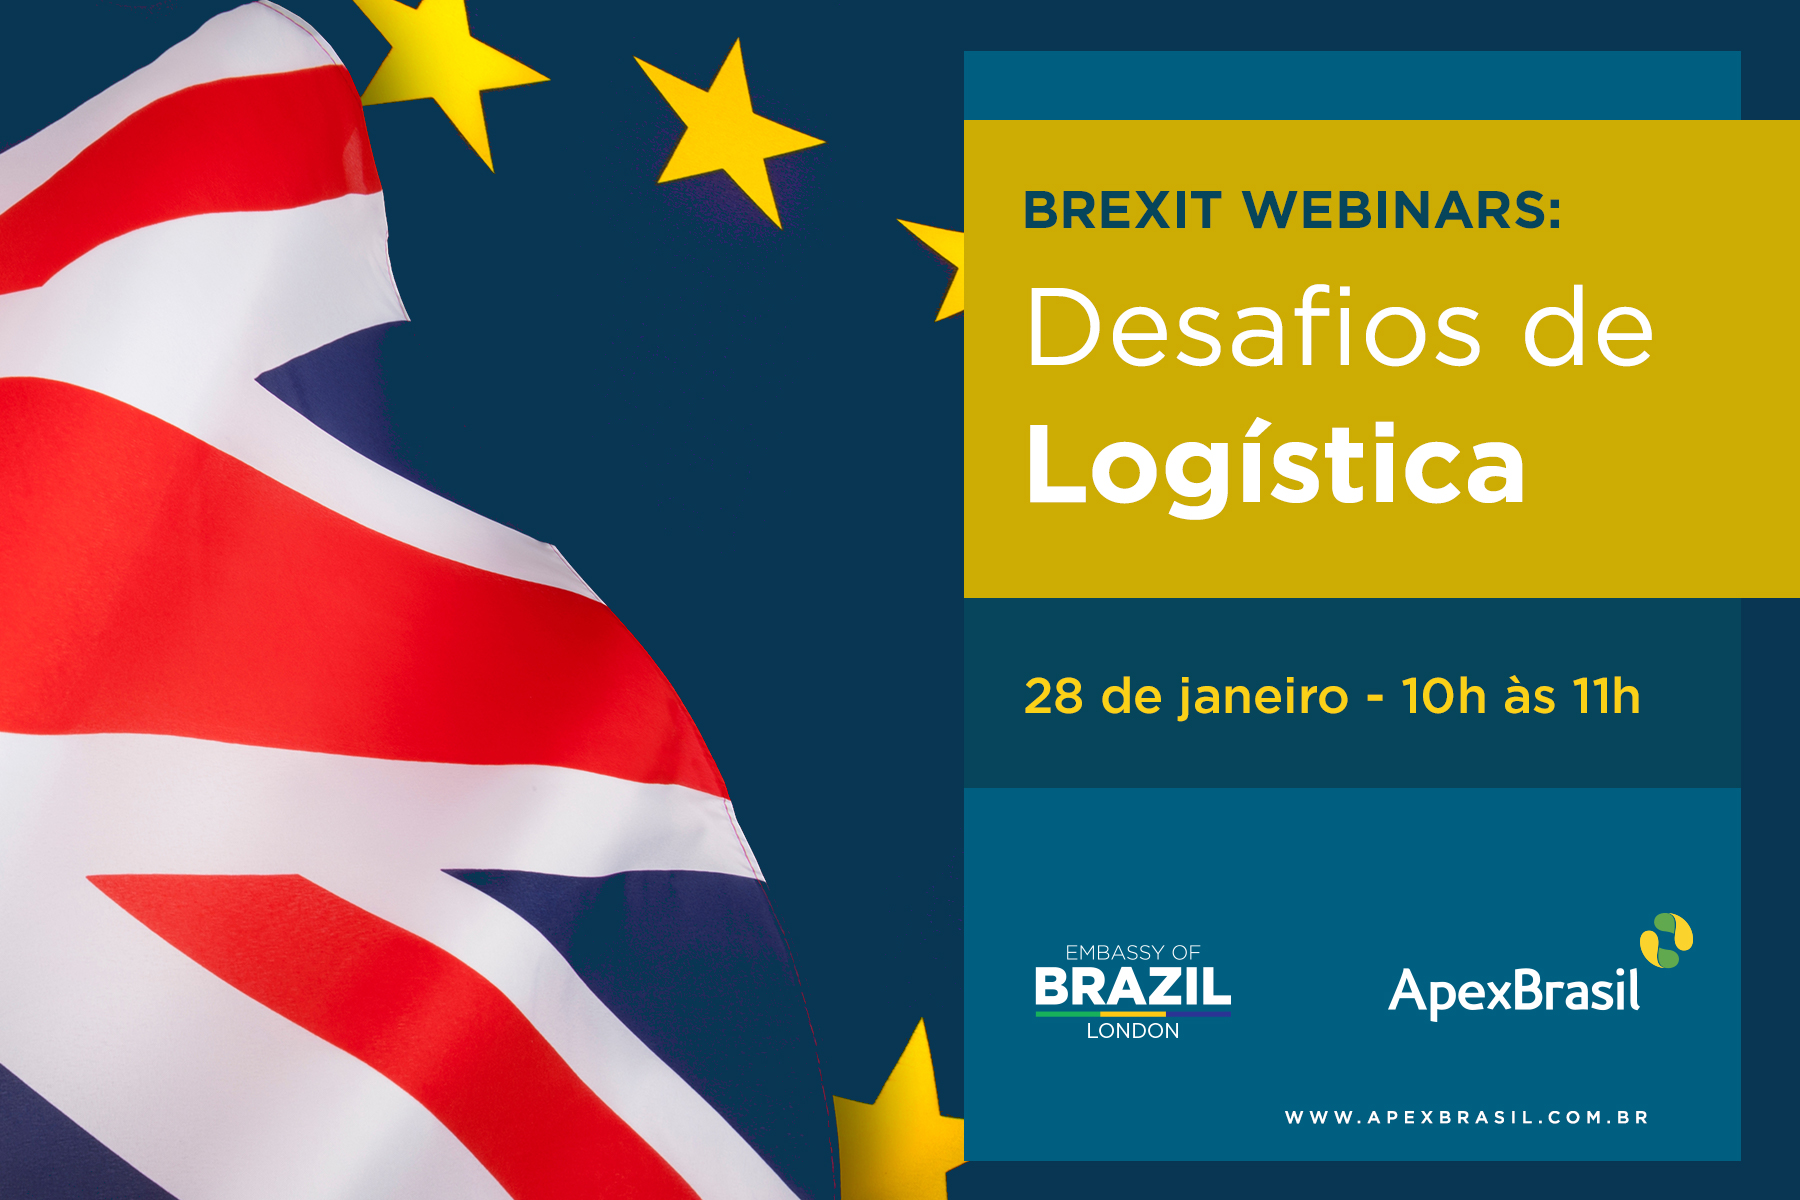 Evento trata dos novos desafios em logística para exportações ao Reino Unido